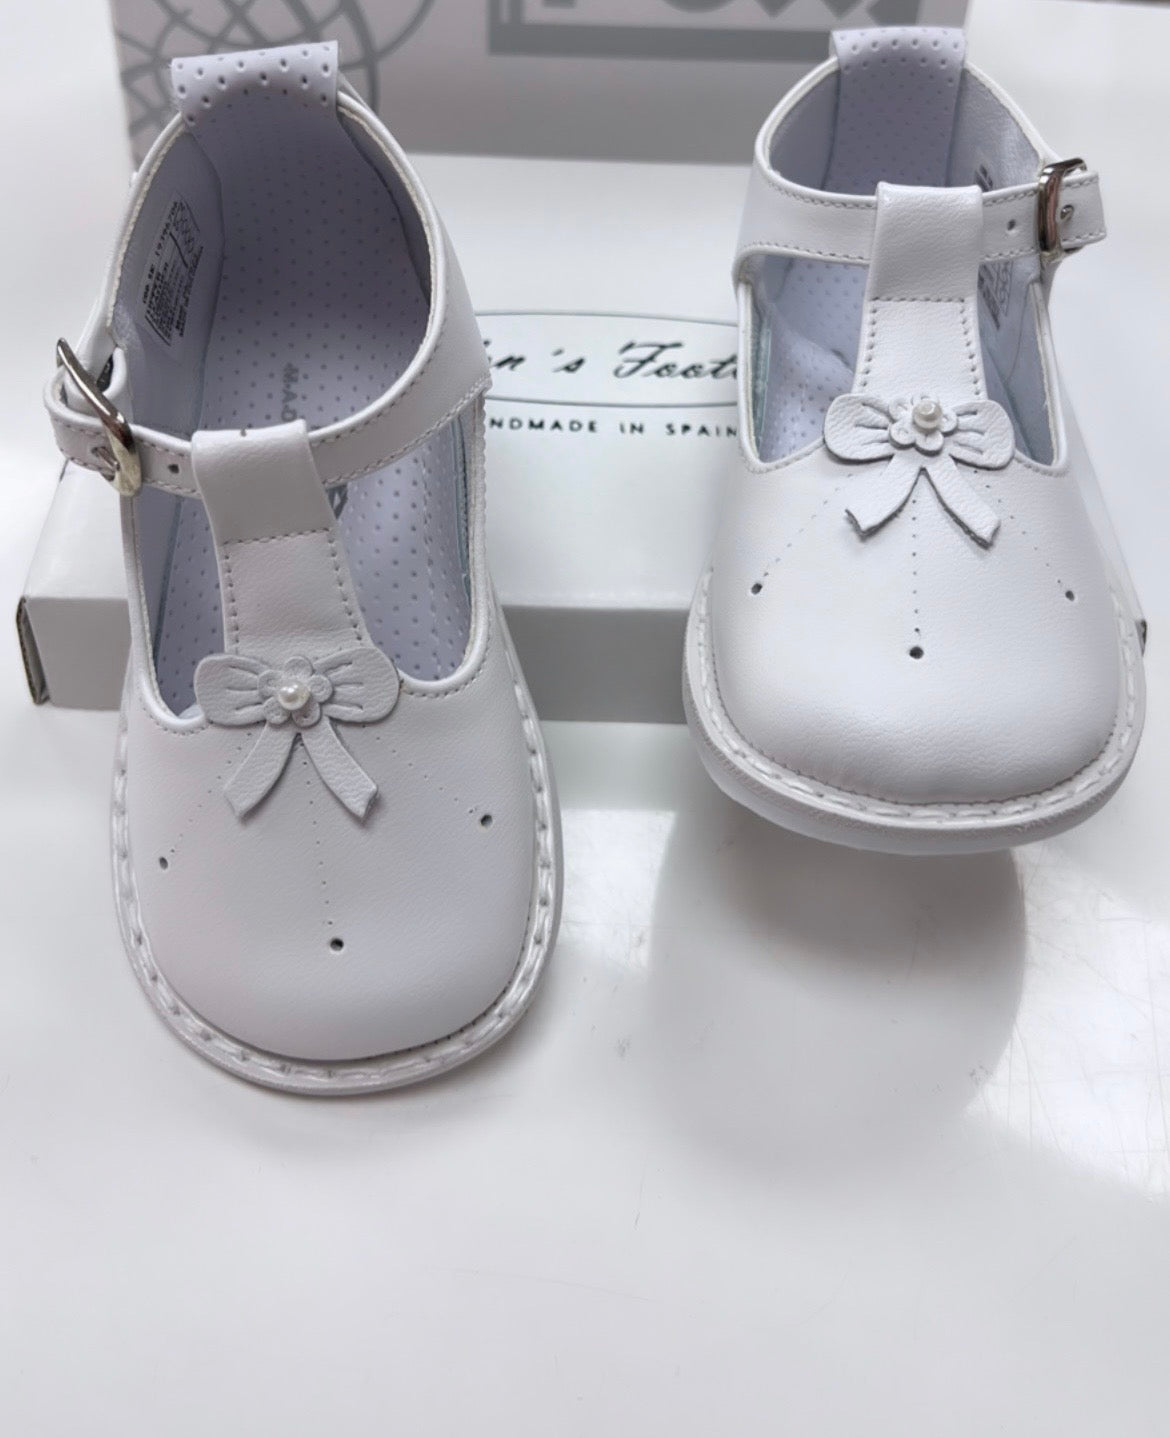 PEX White Amelia Shoe